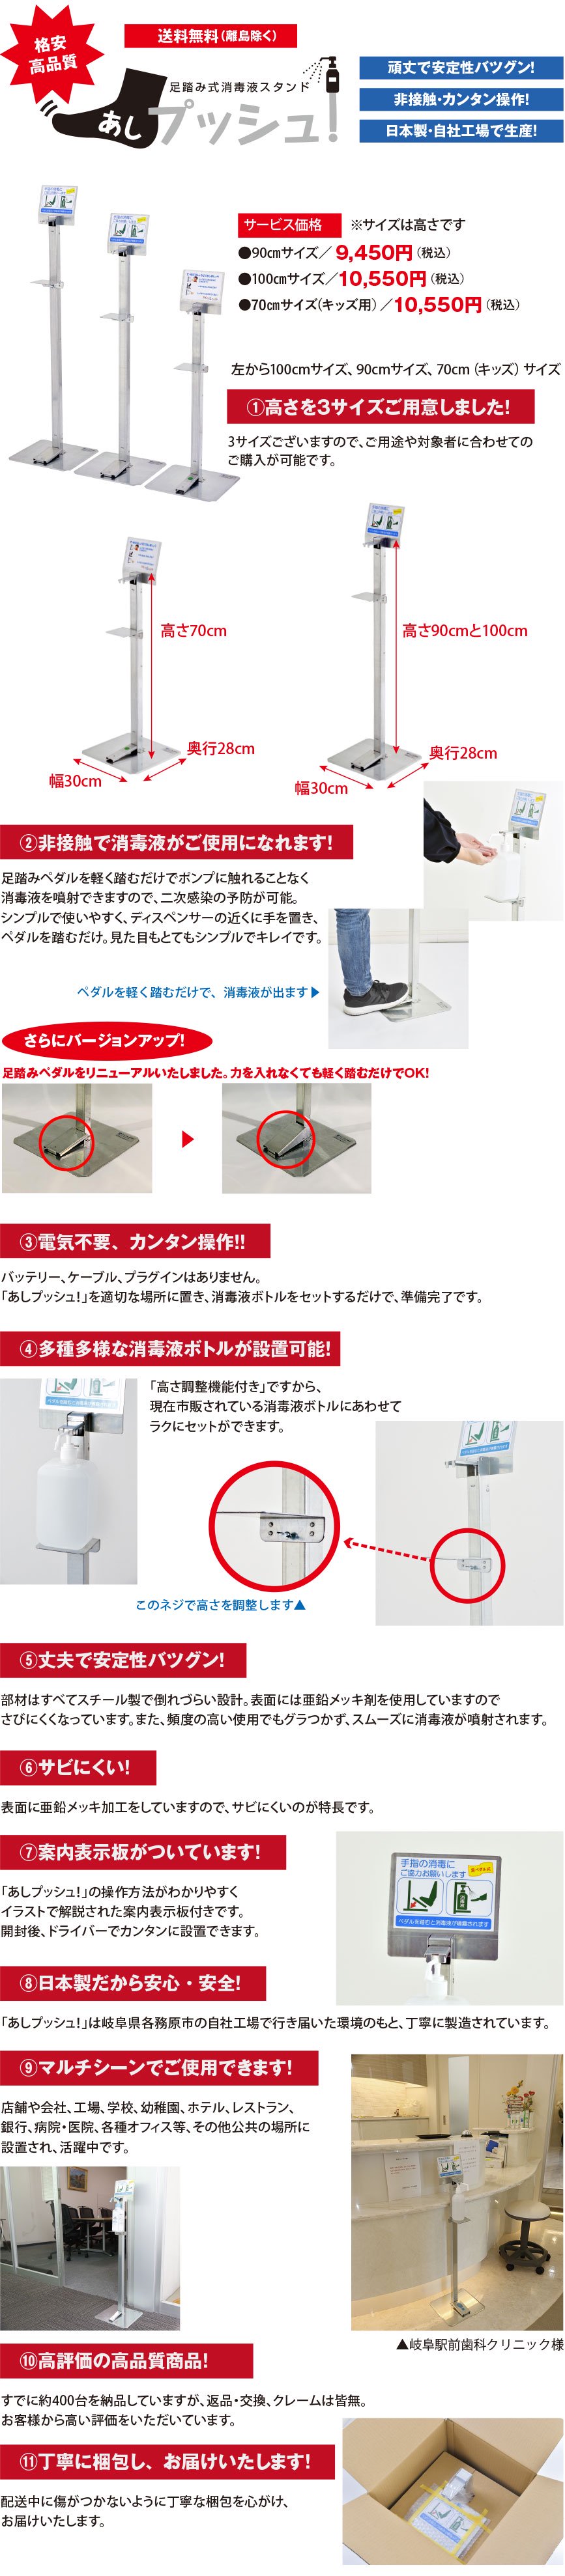 足踏み式消毒液スタンド「あしプッシュ！」70cmサイズは日本で生産し、低価格でご提供。スチール製で安定性バツグン。足でペダルを踏めば、ポンプ式消毒液ボトルから消毒液(アルコール)が噴射され、非接触で衛生的。高さ調節も可能で、市販の消毒液であればほとんどが設置可能。